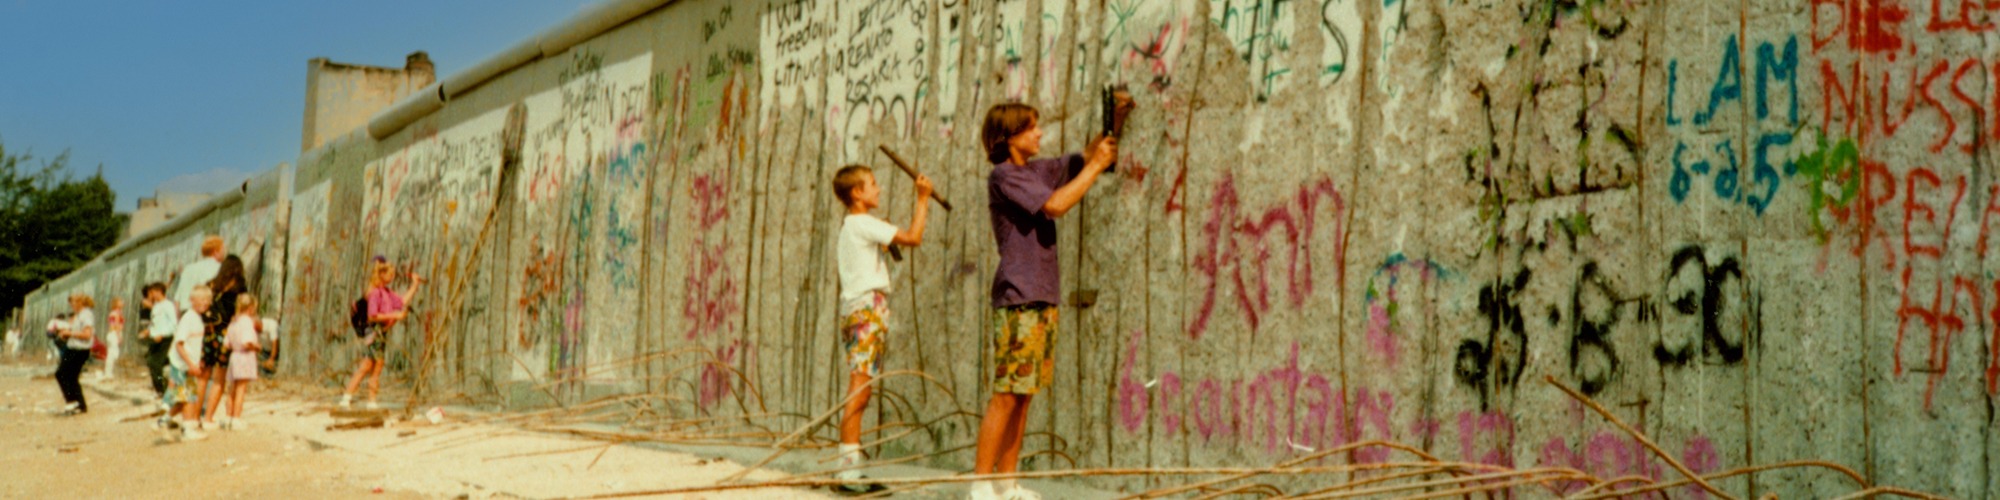 Foto der Berliner Mauer mit Jugendlichen, die Stücke aus der Mauer schlagen